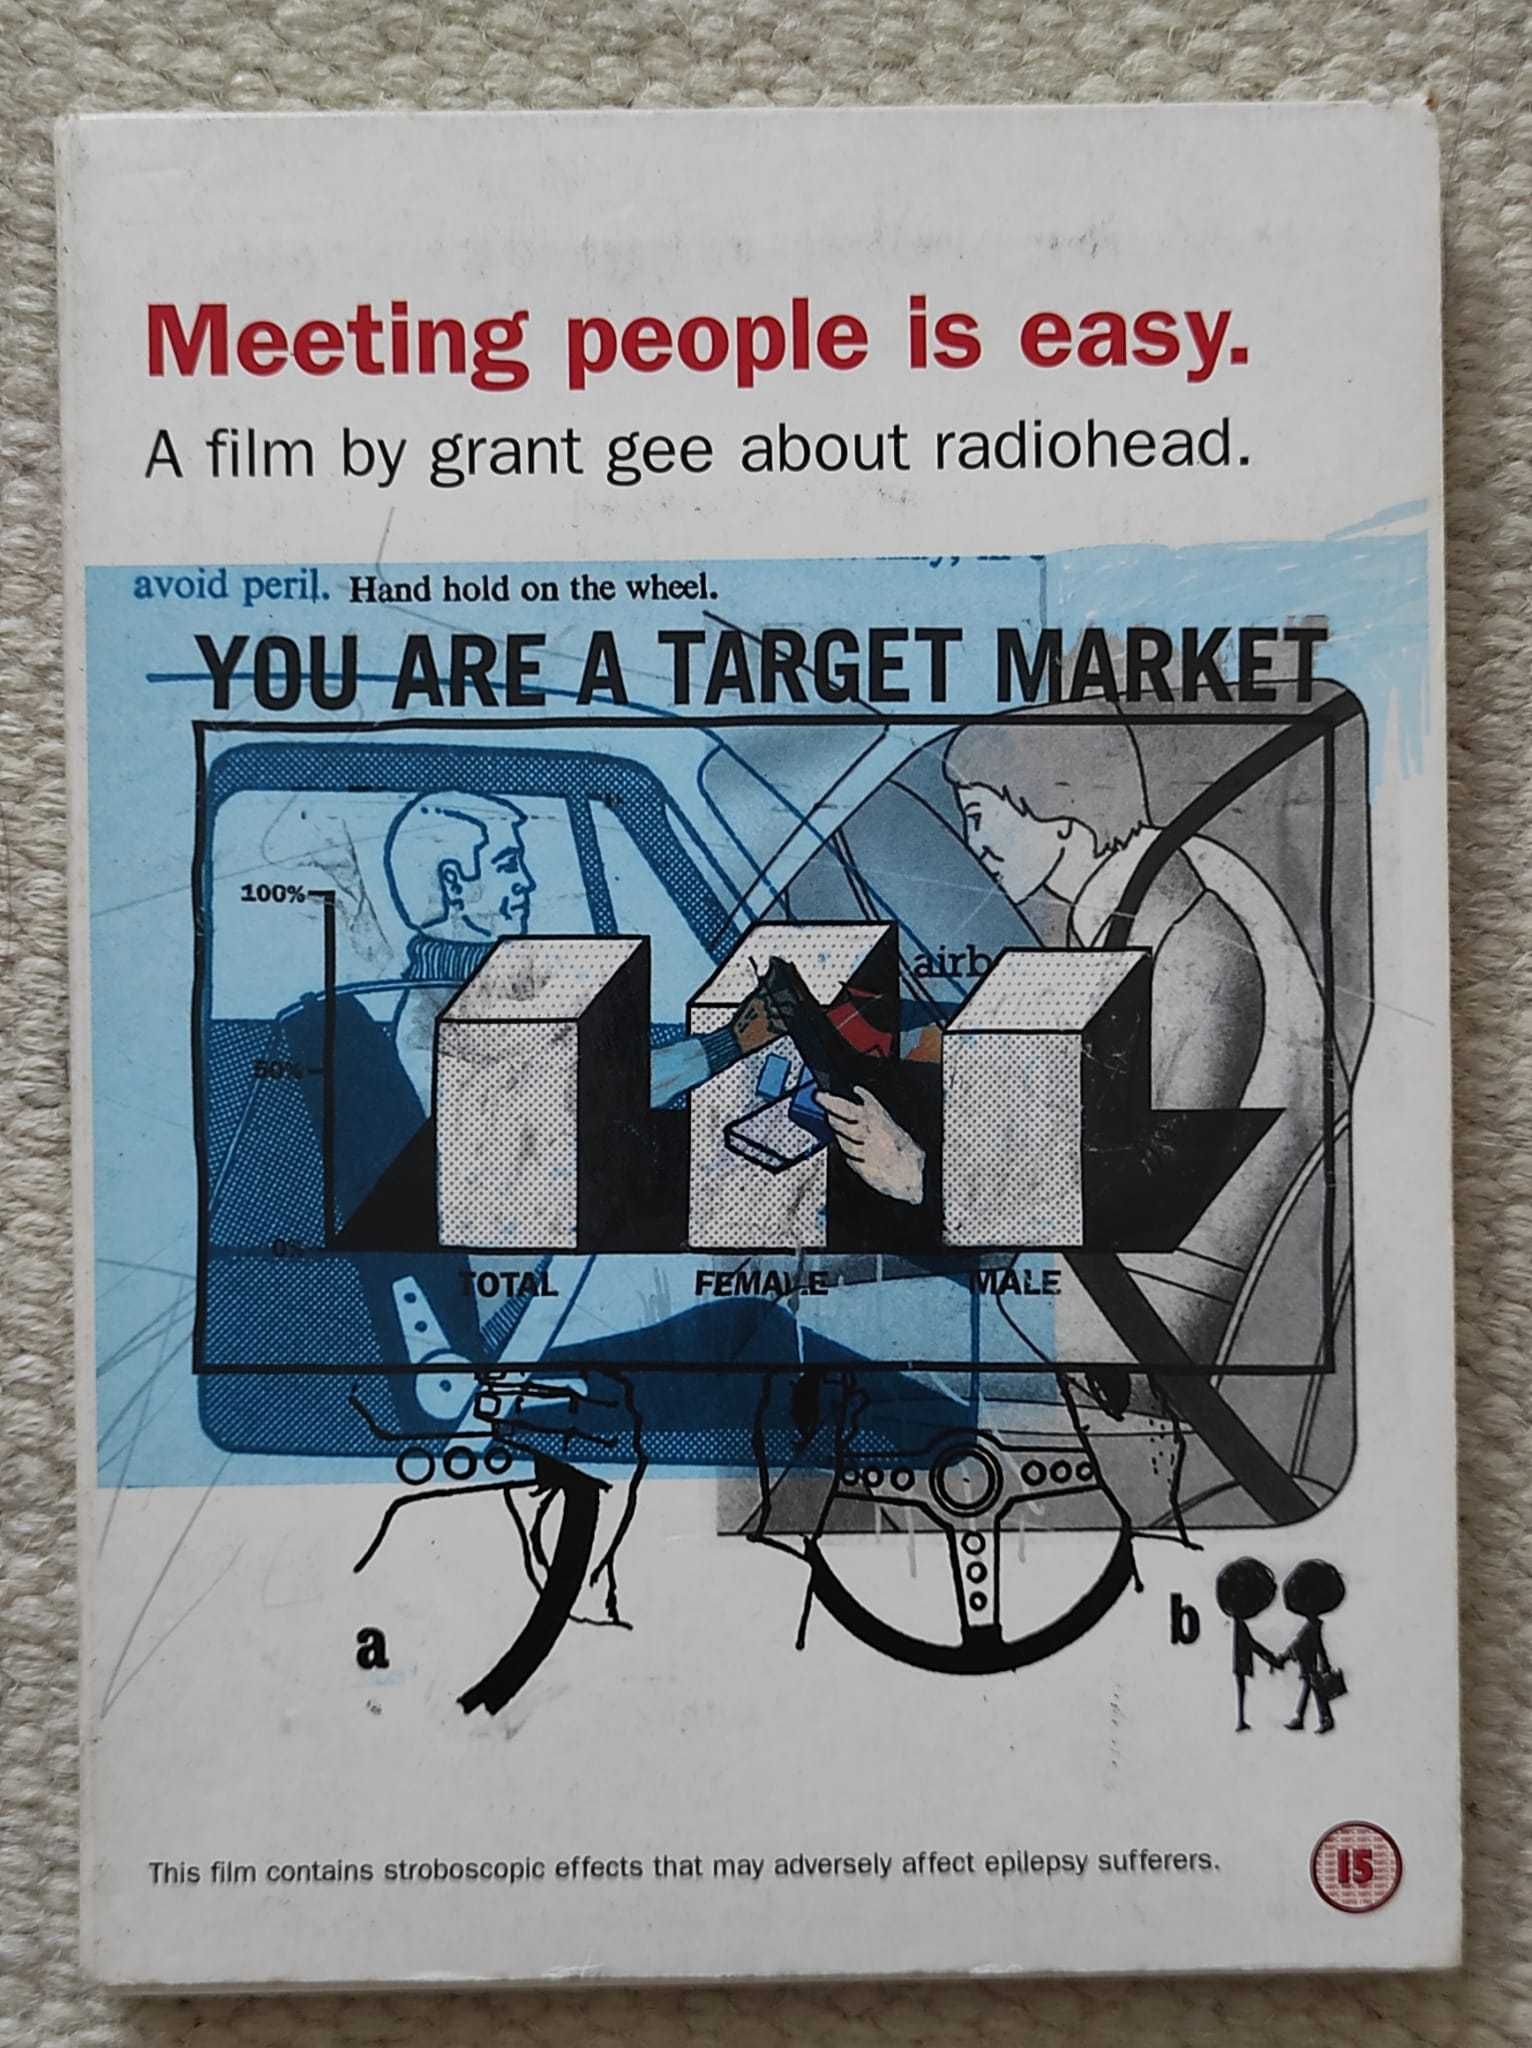 DVD "Radiohead - Meeting people is easy", de Grant Gee. Raro.